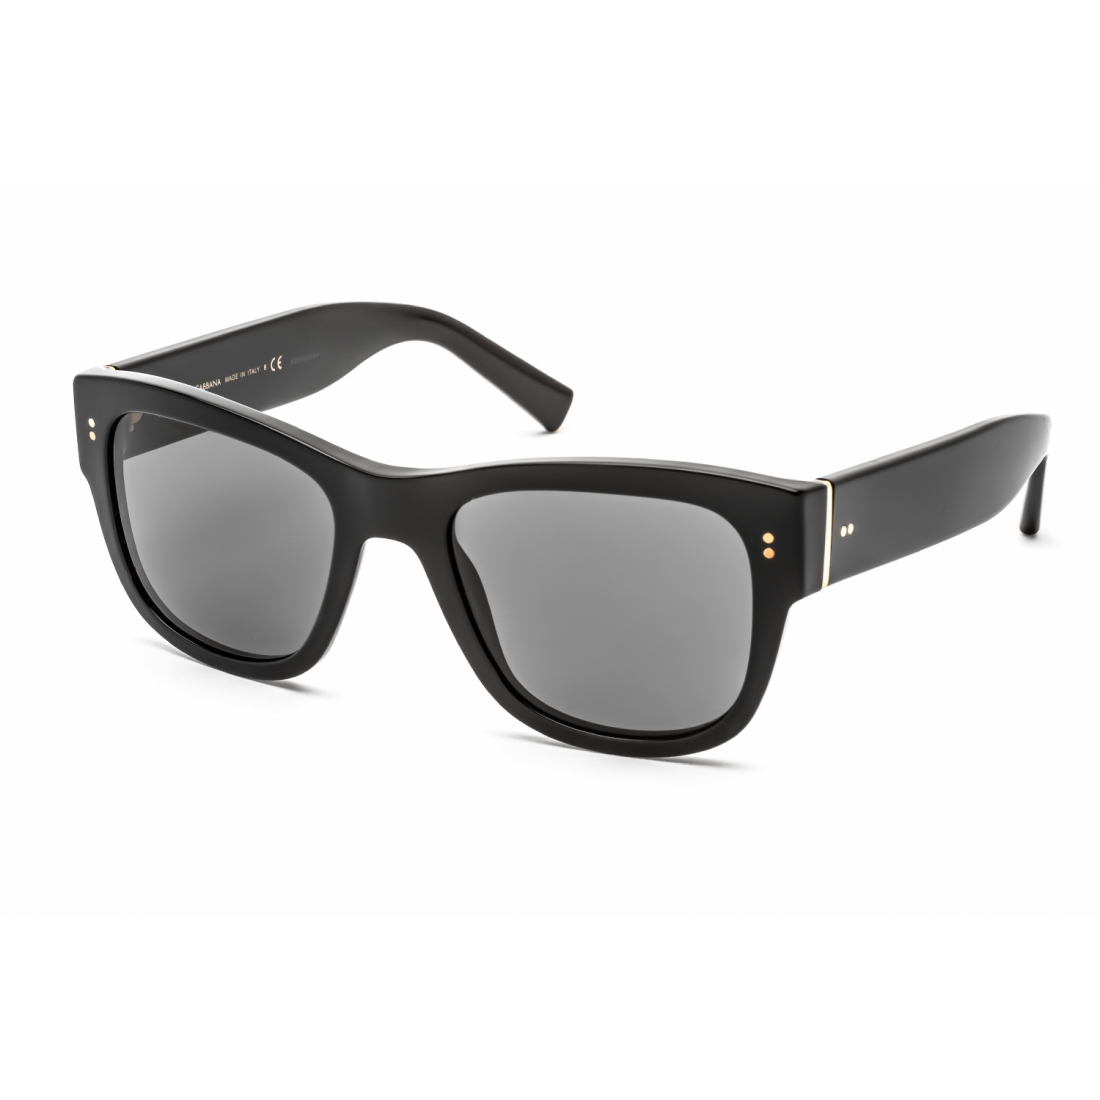 Men's 'DG4338' Sunglasses